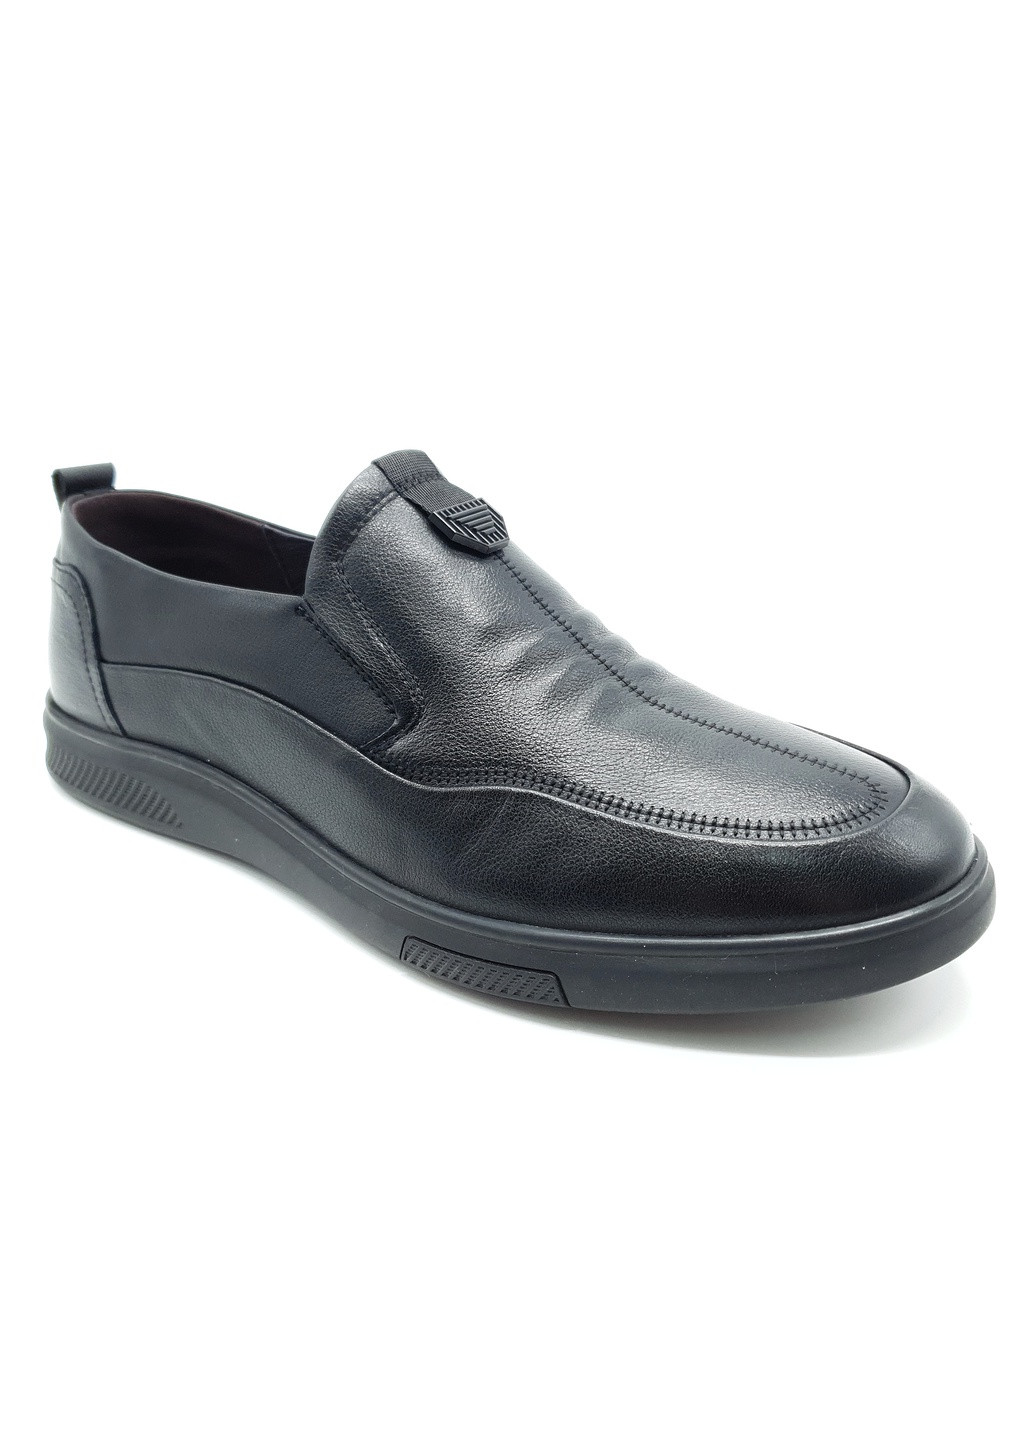 Черные чоловічі туфлі чорні шкіряні bv-19-3 27 см (р) Boss Victori